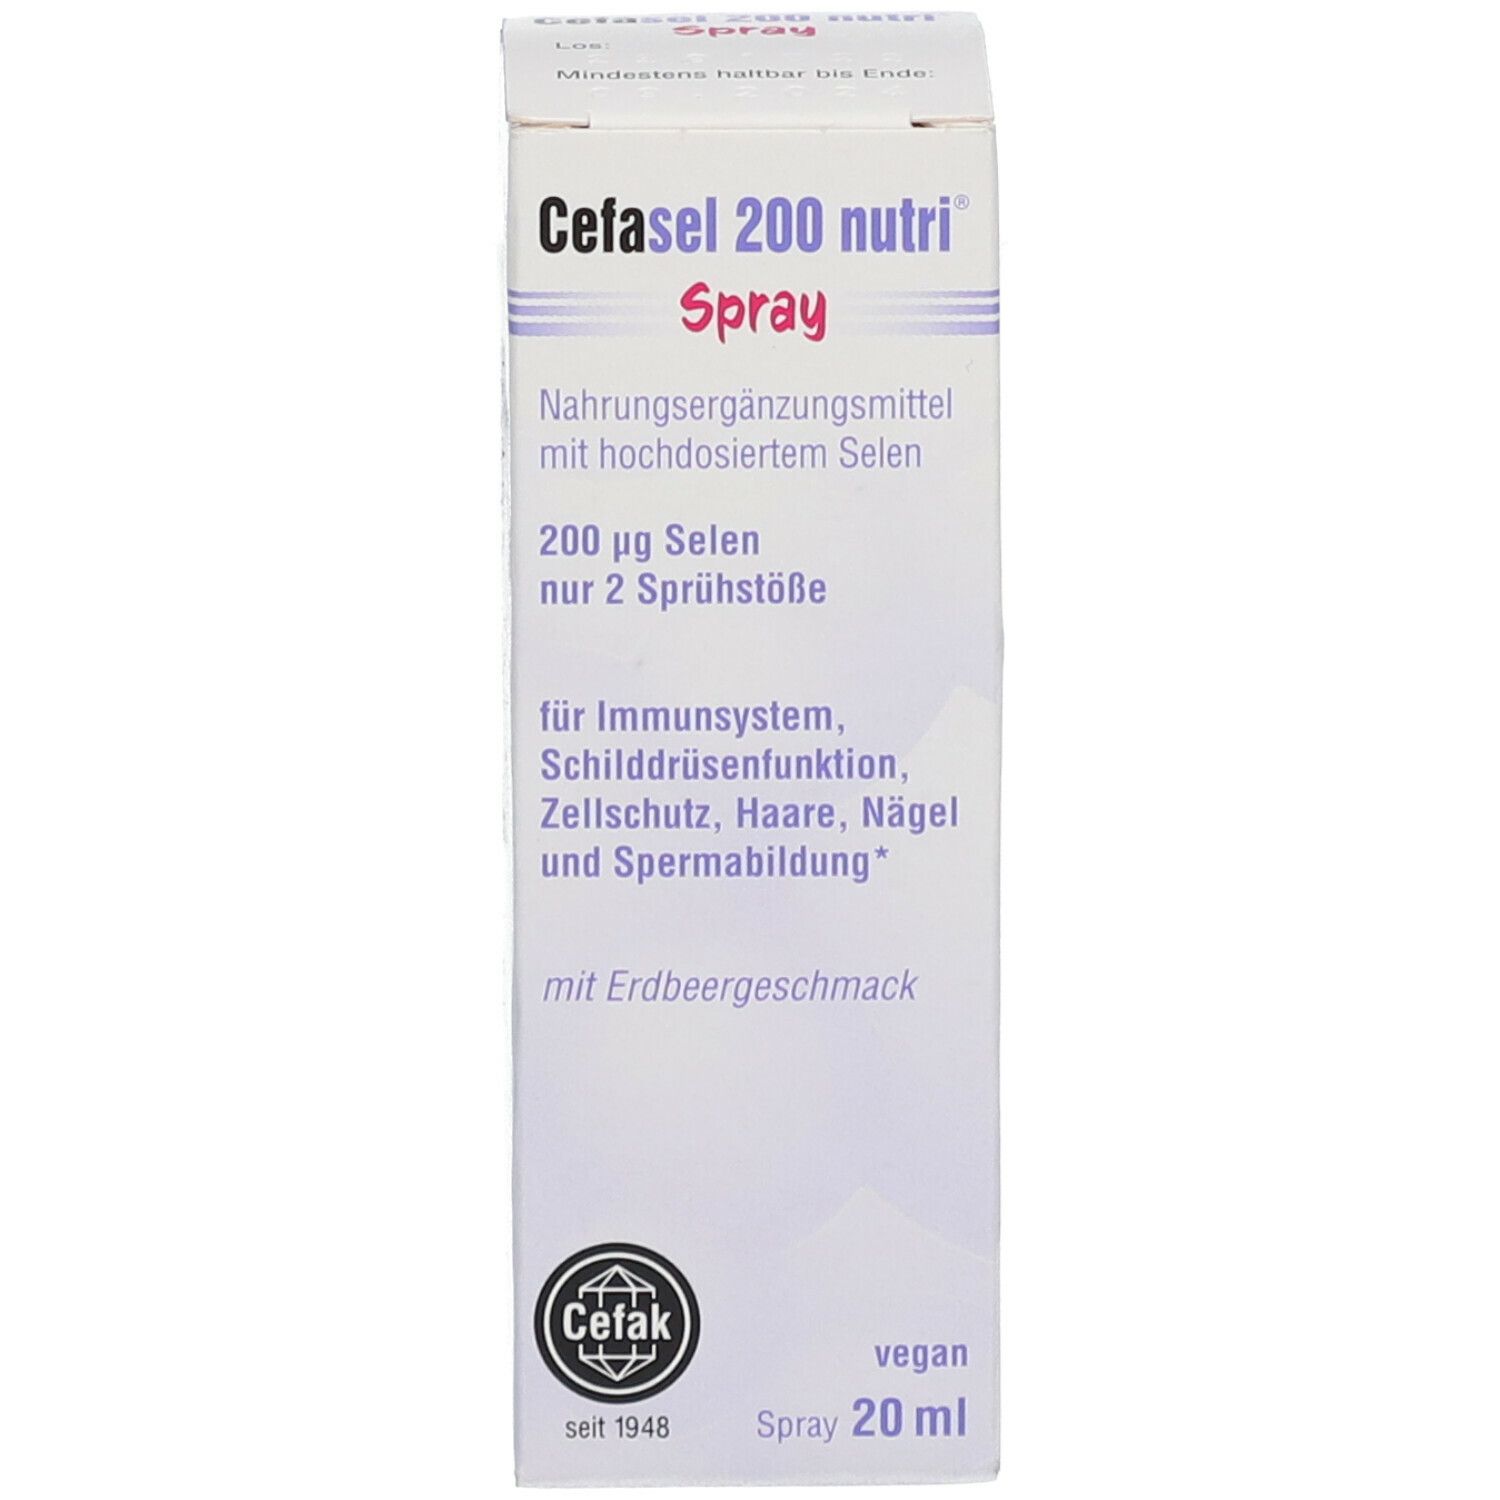 Cefasel 200 nutri® Spray